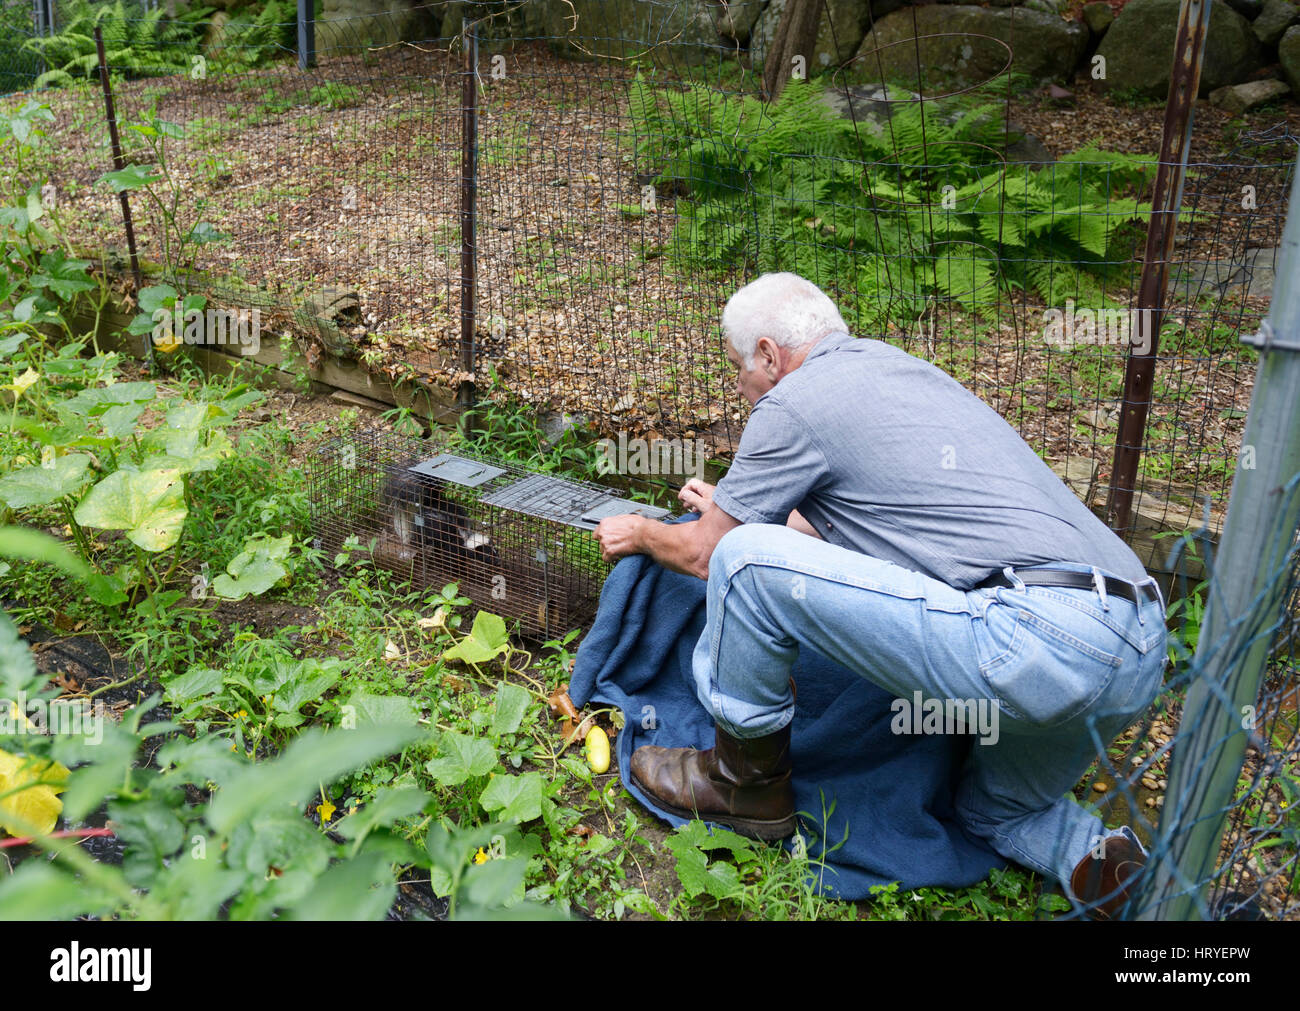 Mann ein Stinktier aus einer Falle in einem Garten entfernen Stockfoto